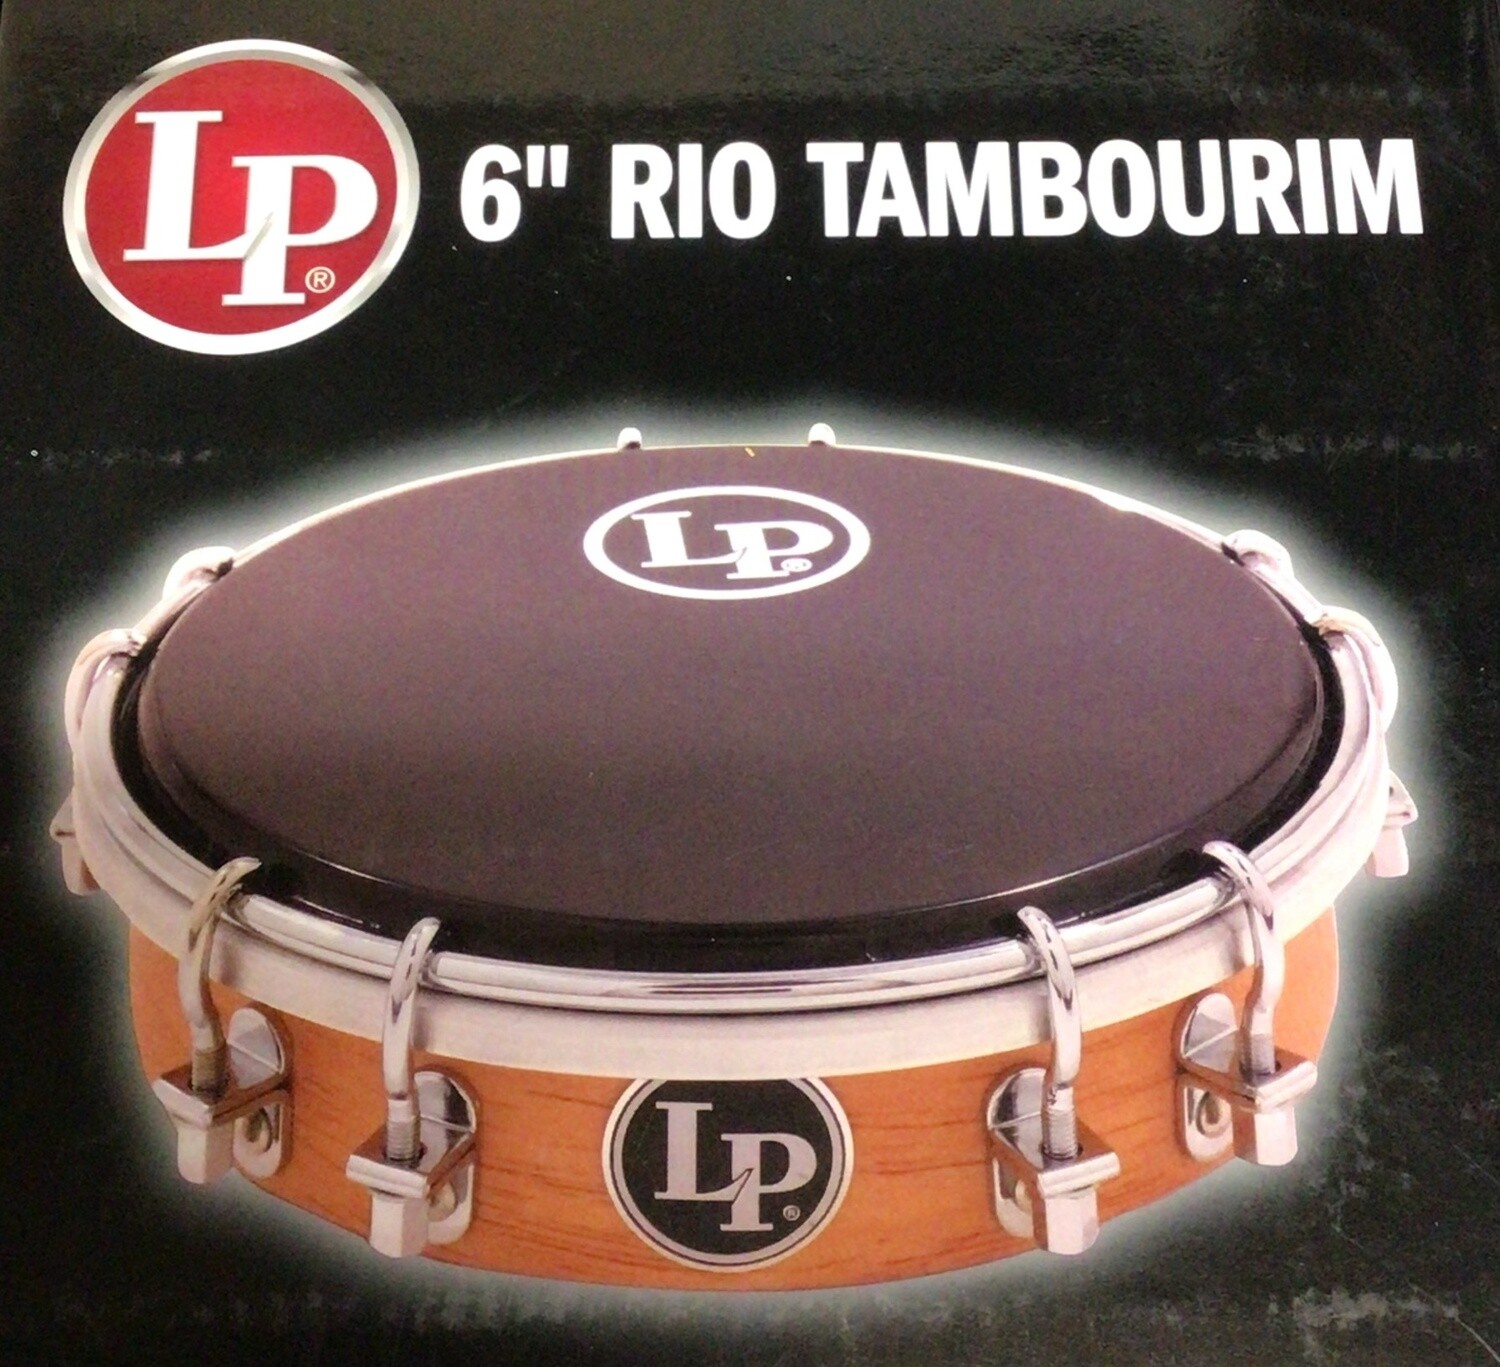 LP Rio Tambourim 6"